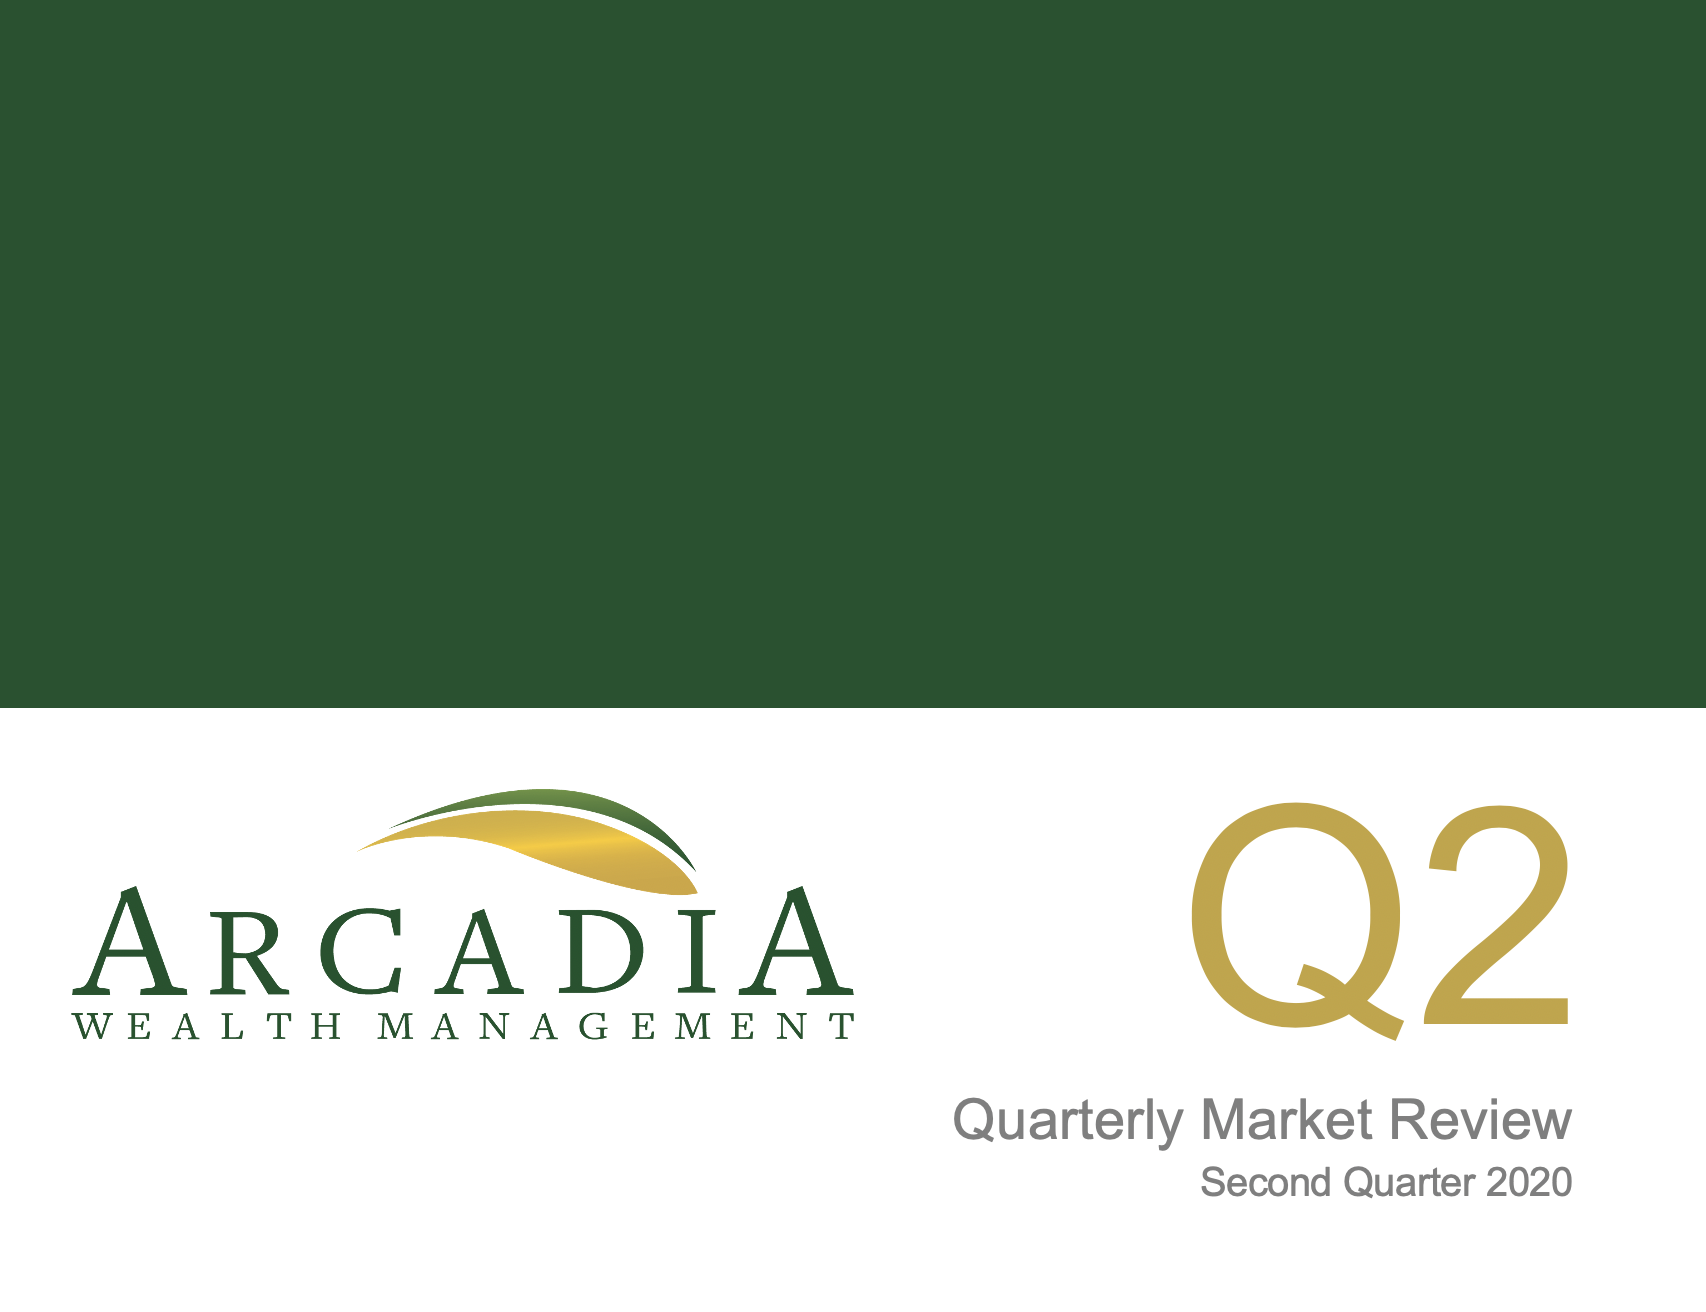 Second Quarter 2020 - Quarterly Market Review